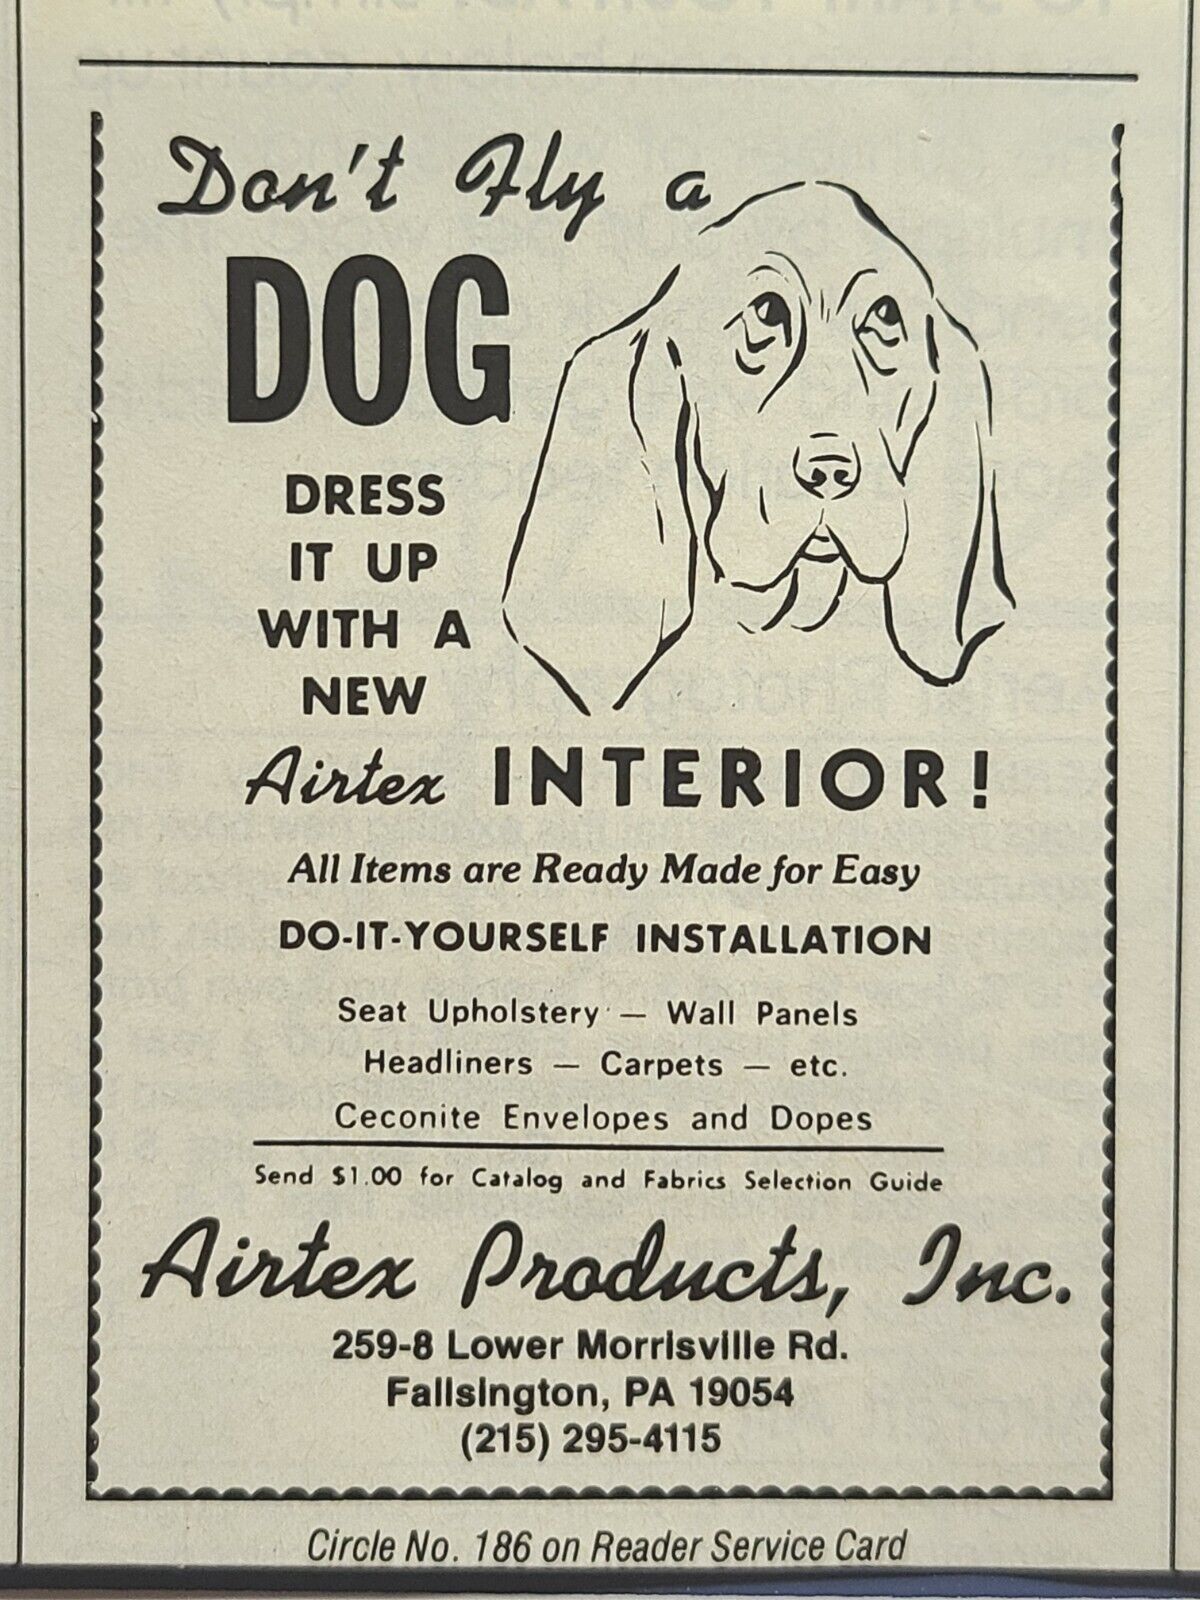 Airtex Products Fallsington PA Aircraft Interiors Dog Vintage Print Ad 1979